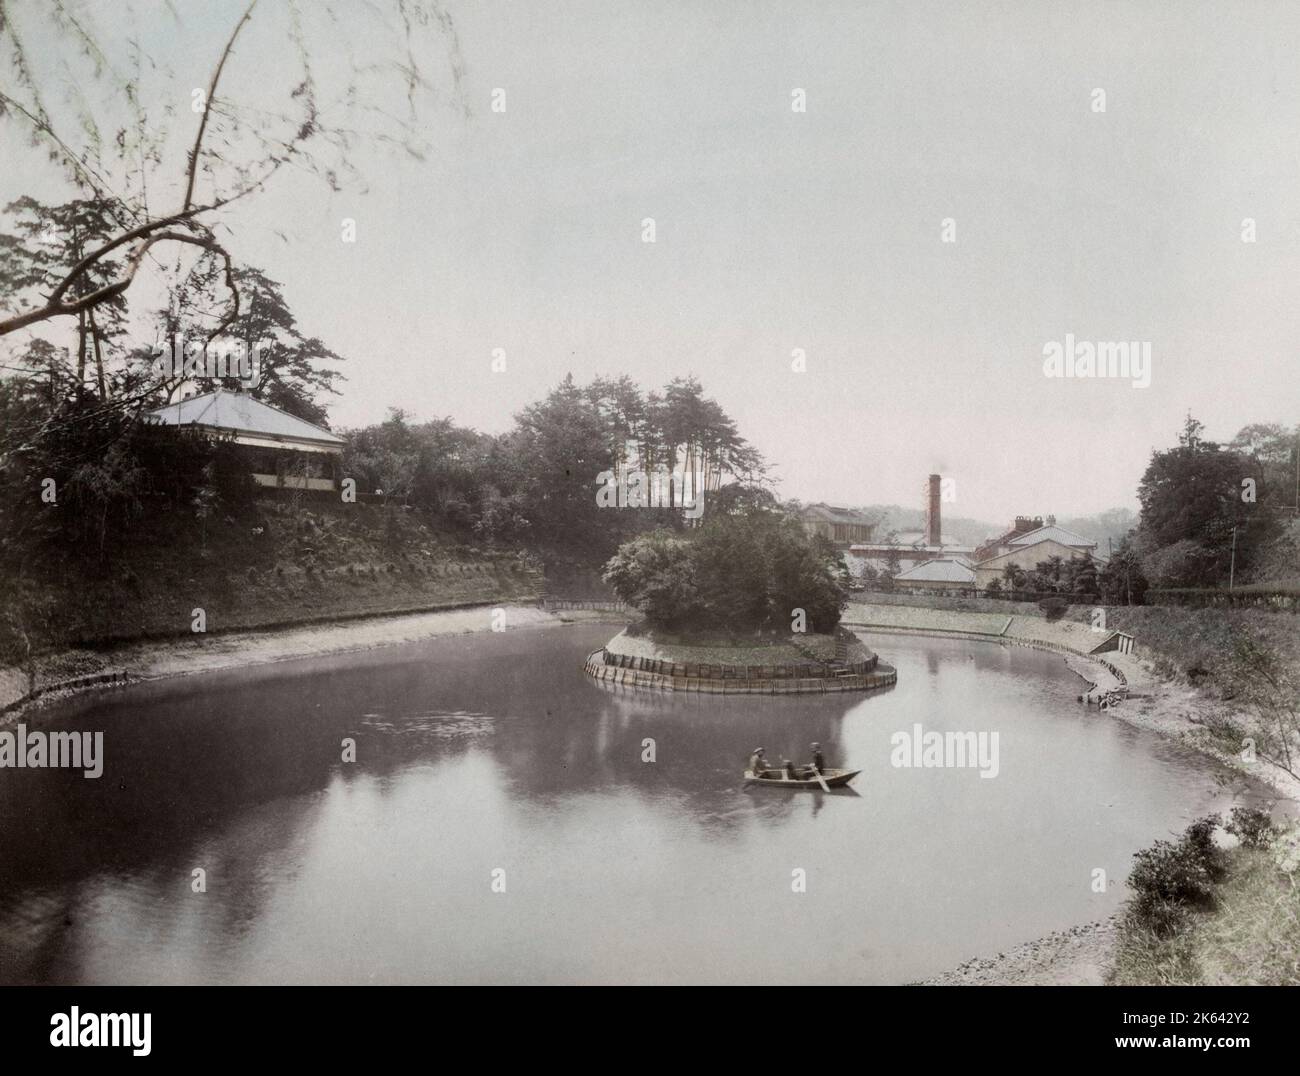 Kleines Boot auf einem See mit Fabrik im Hintergrund, wahrscheinlich Yokohama, Japan, Ende des 19.. Jahrhunderts. Stockfoto